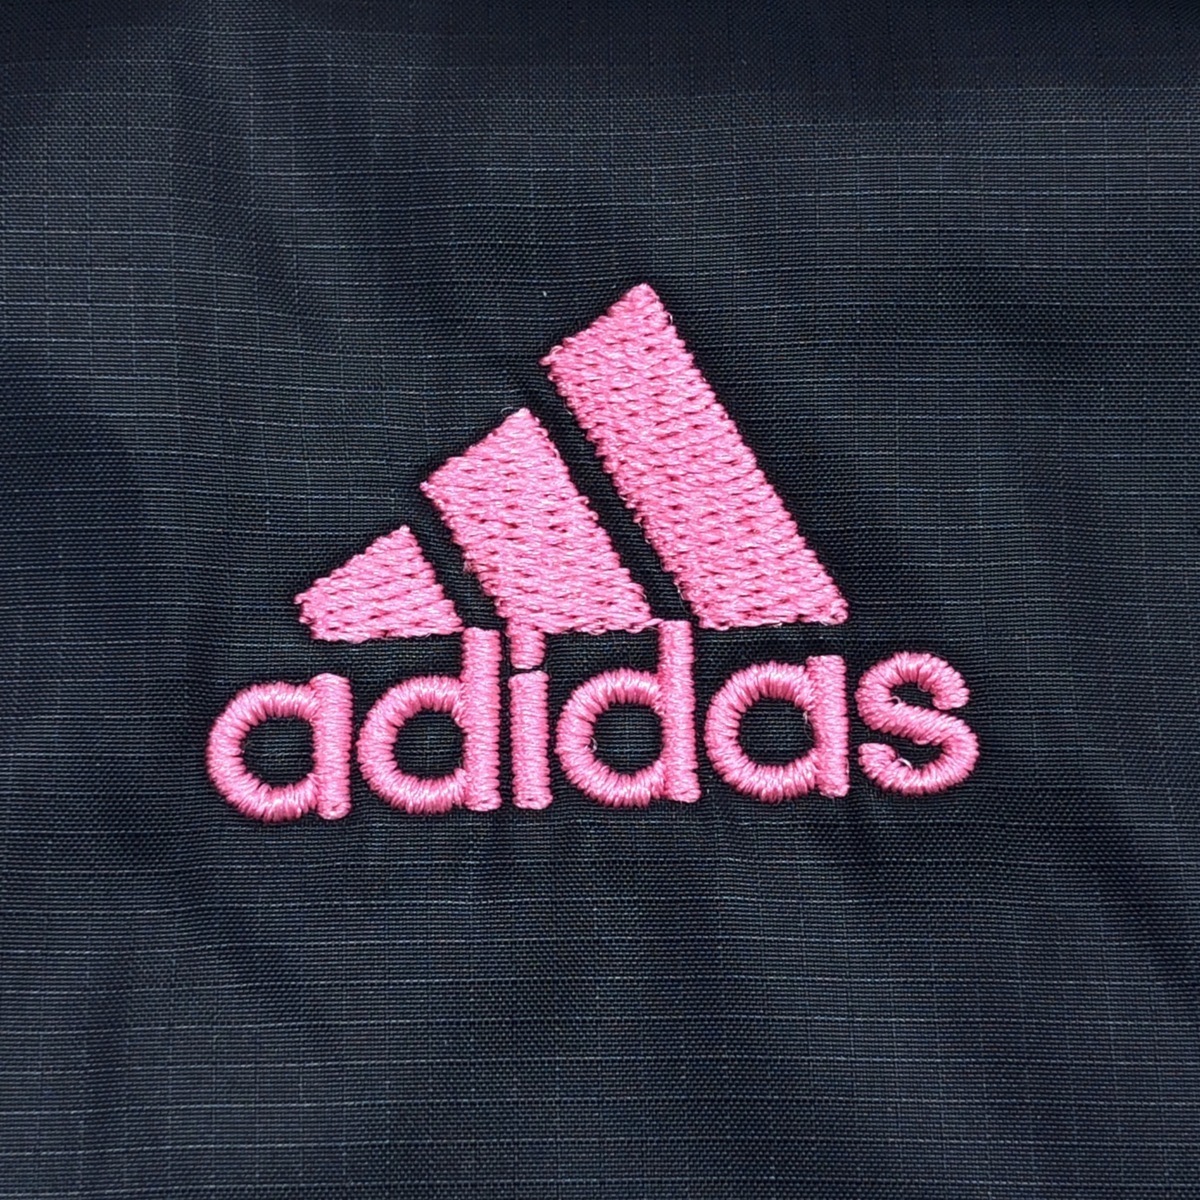 Adidas アディダス 中綿 ロゴ刺繍 Ess F パデッドジャケット M 濃紺 ネイビー レディース スポーツ 国内正規品 21正規激安